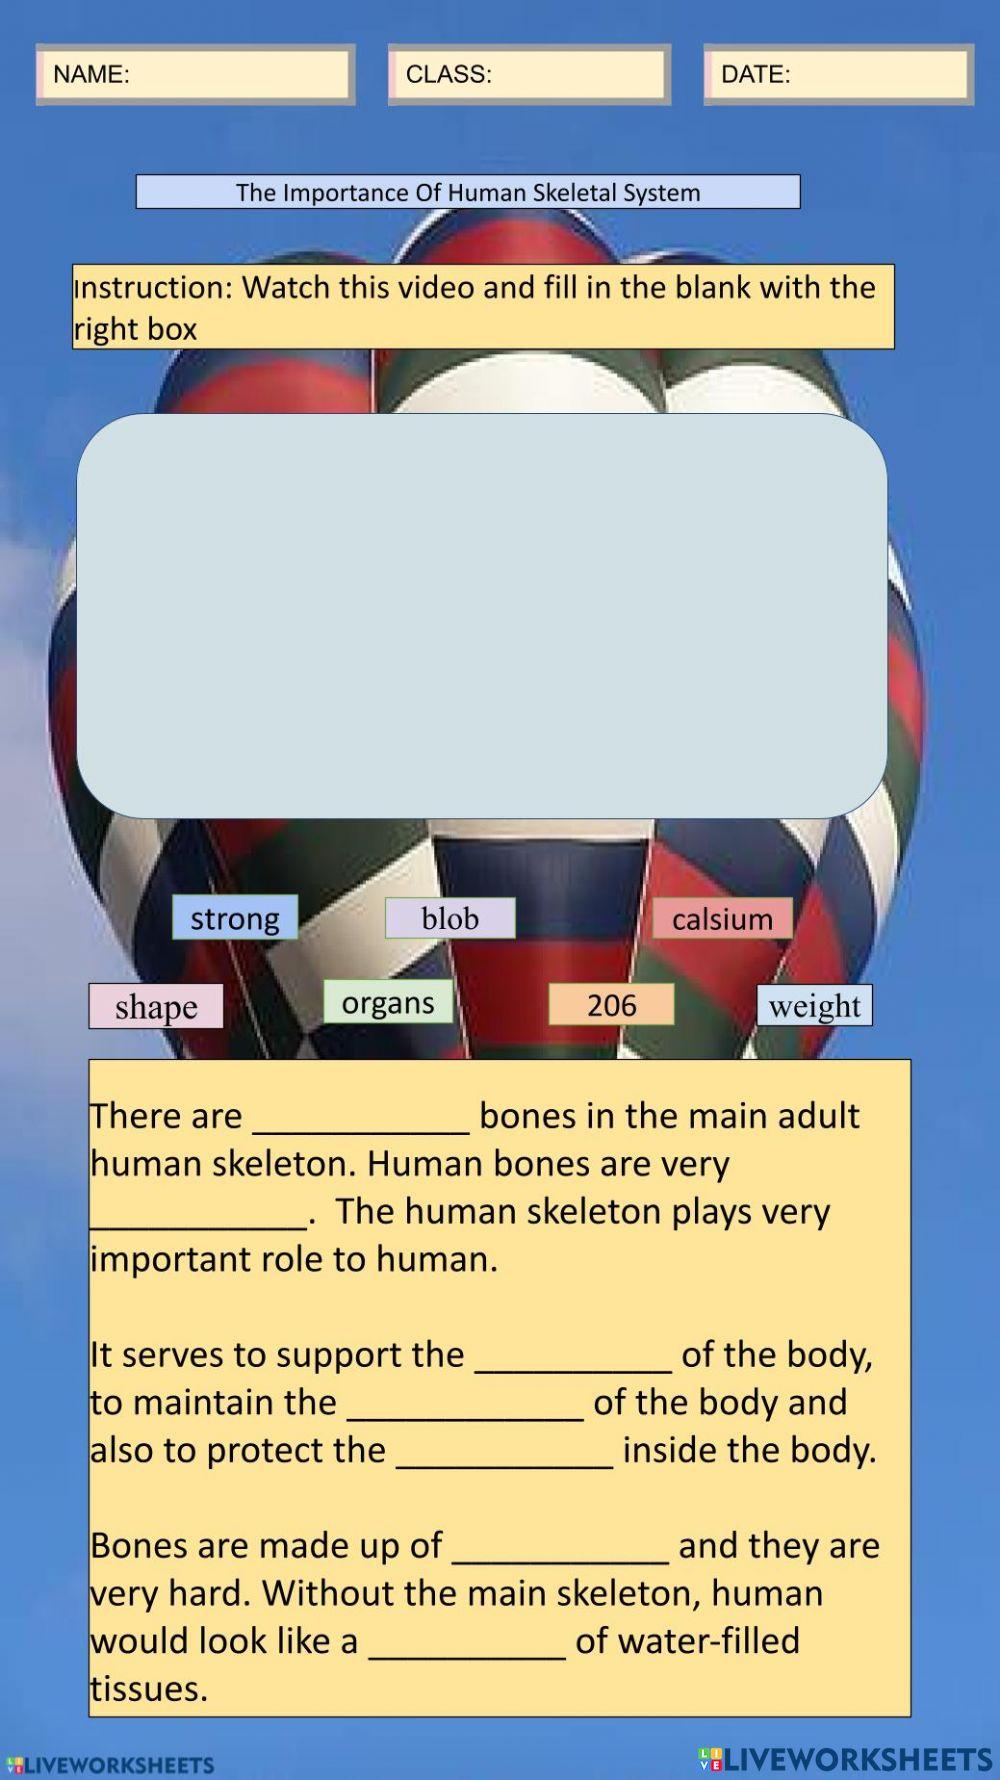 Human Skeletal system